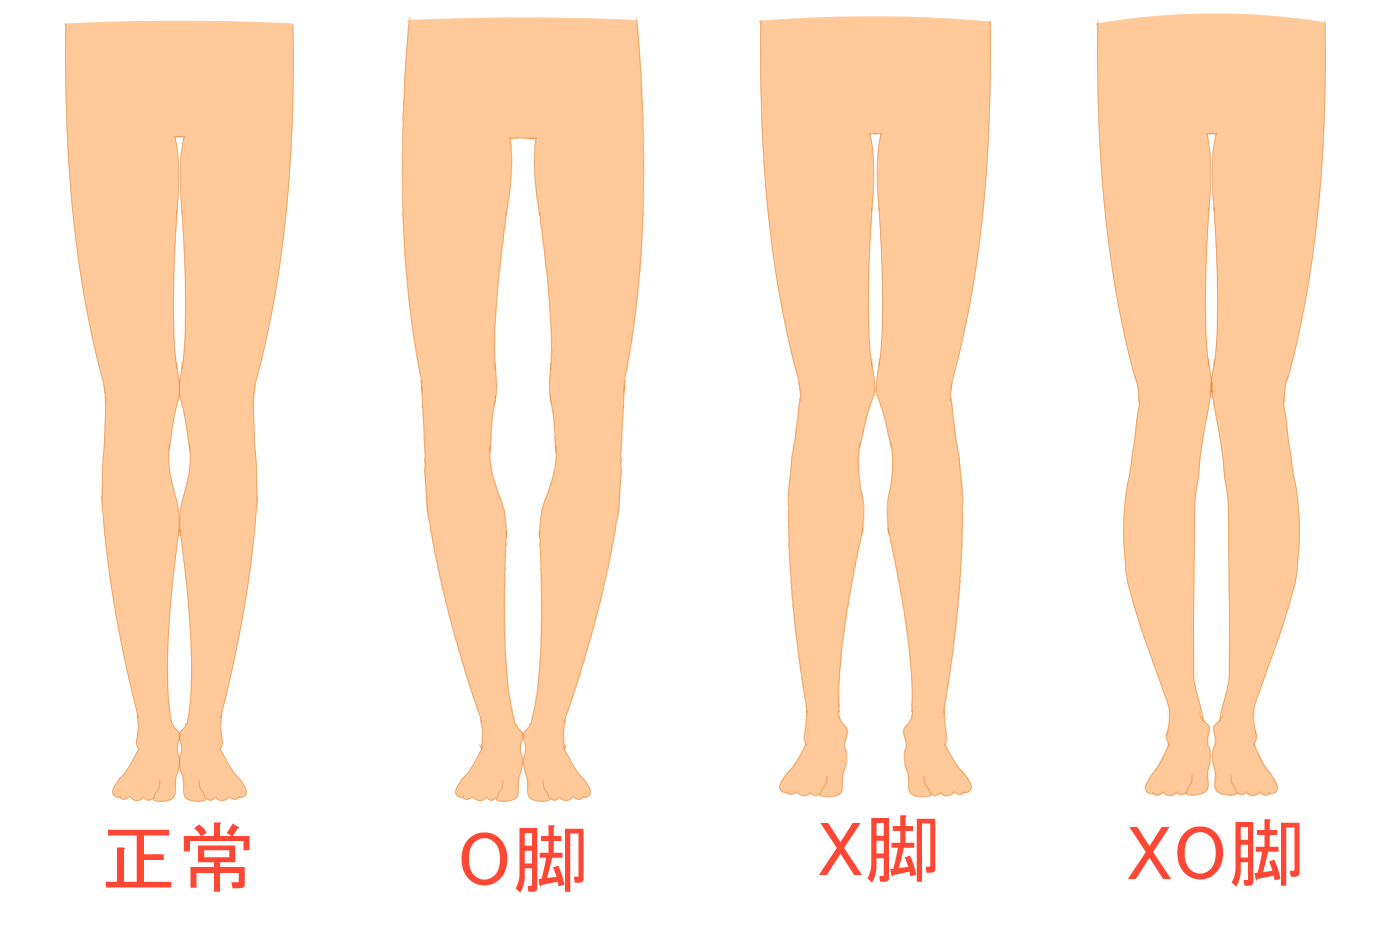 O脚の原因4選を解説！O脚矯正に役立つ歩き方やエクササイズも紹介